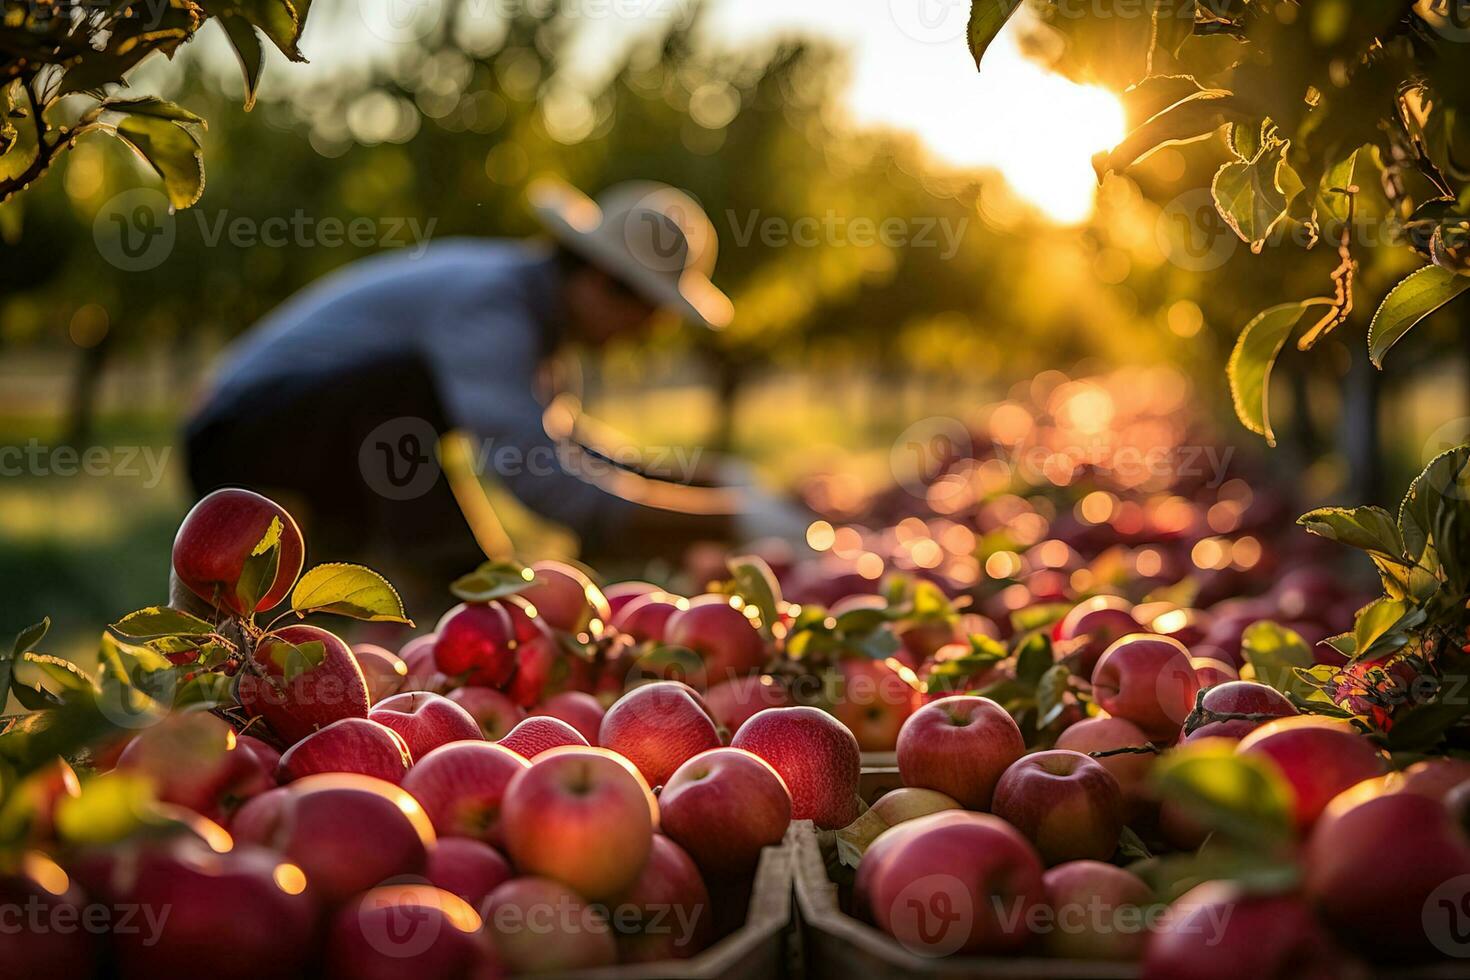 een groep van boeren ijverig plukken rijp rood appels van bomen in een pittoreske boomgaard instelling foto